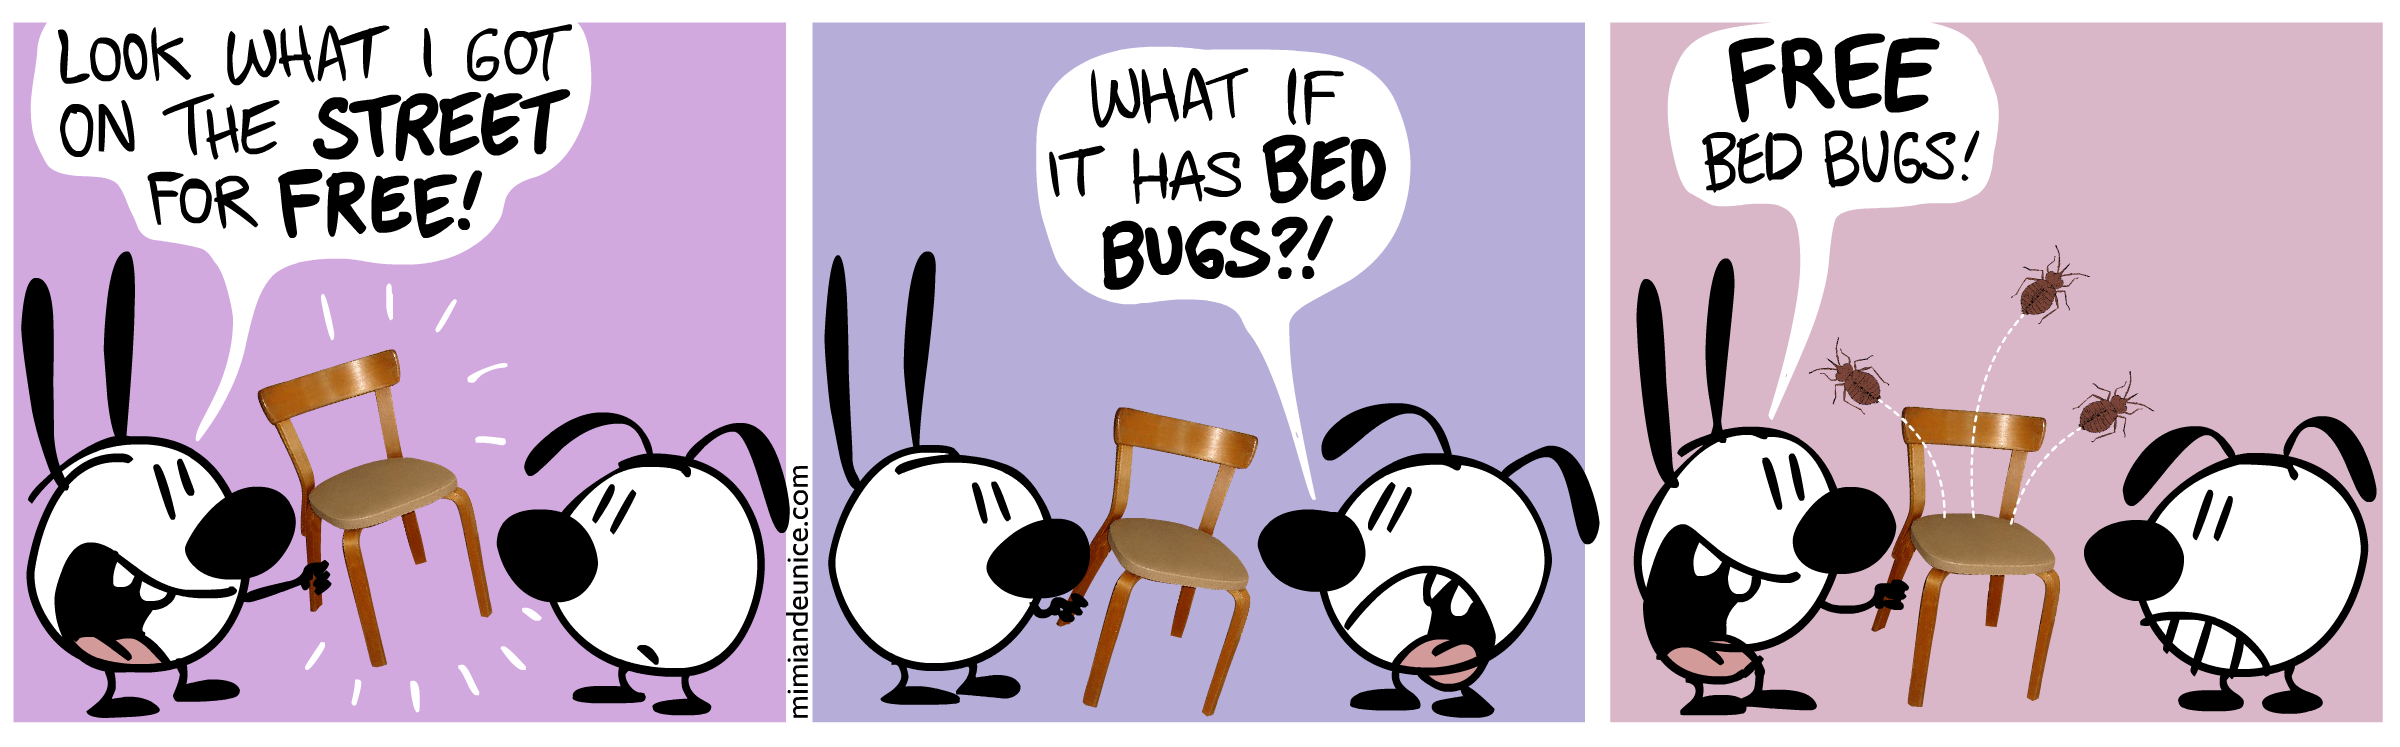 bed bugs cartoon joke